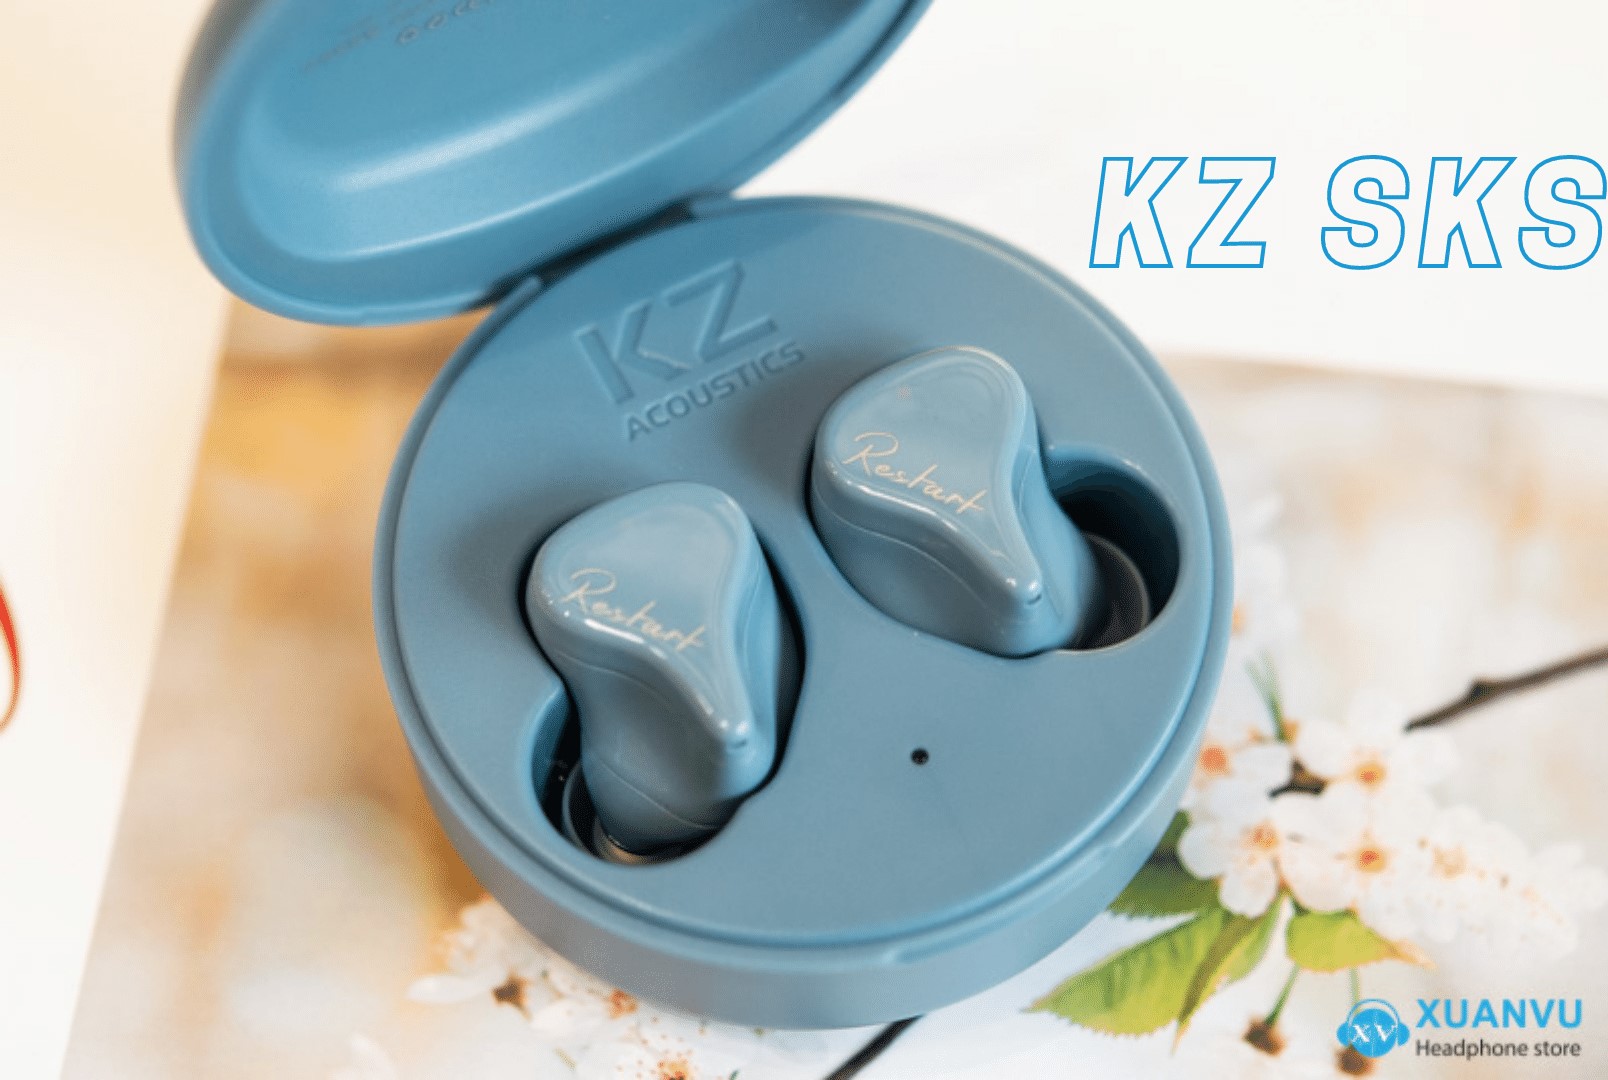 Đánh giá KZ SKS: Phiên bản nâng cấp mạnh mẽ của Z1 Pro